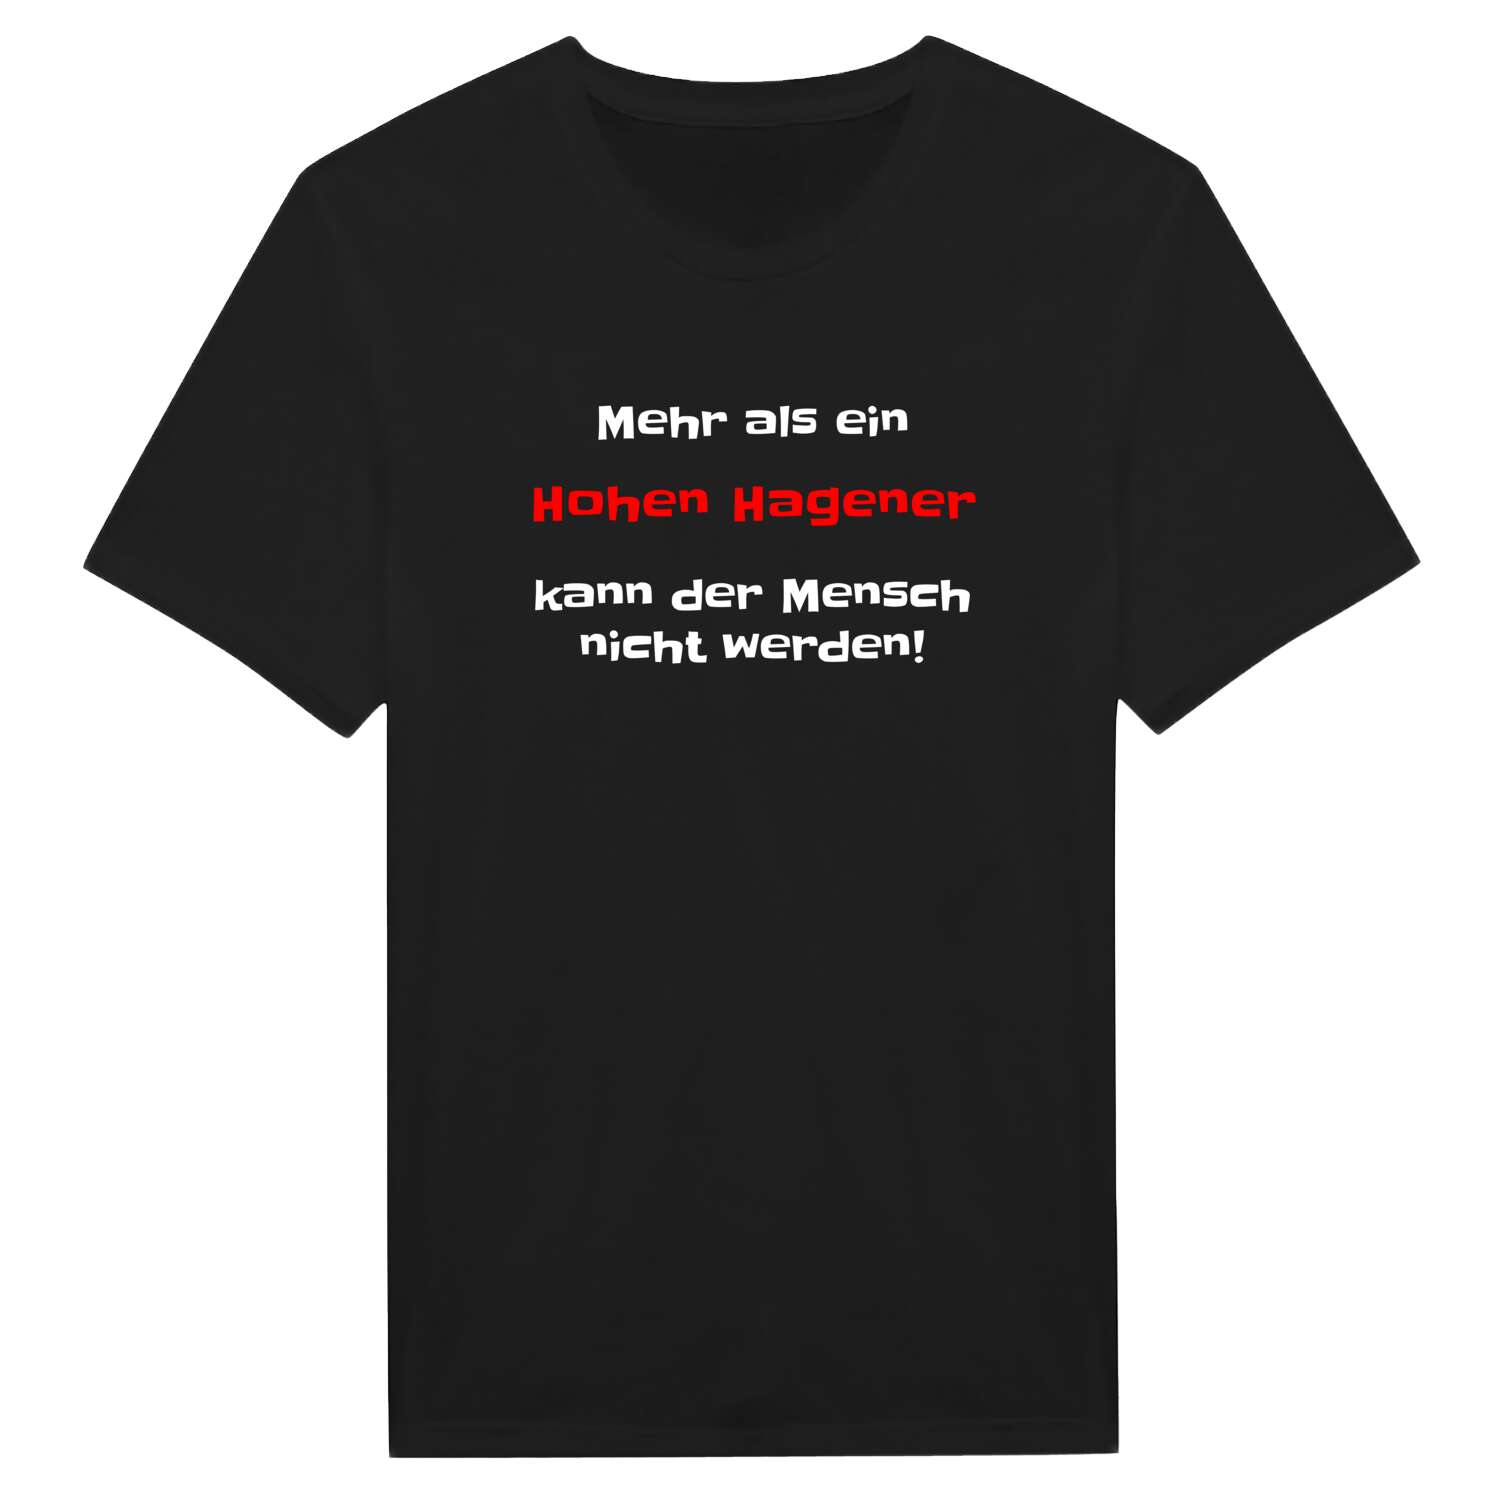 Hohen Hagen T-Shirt »Mehr als ein«